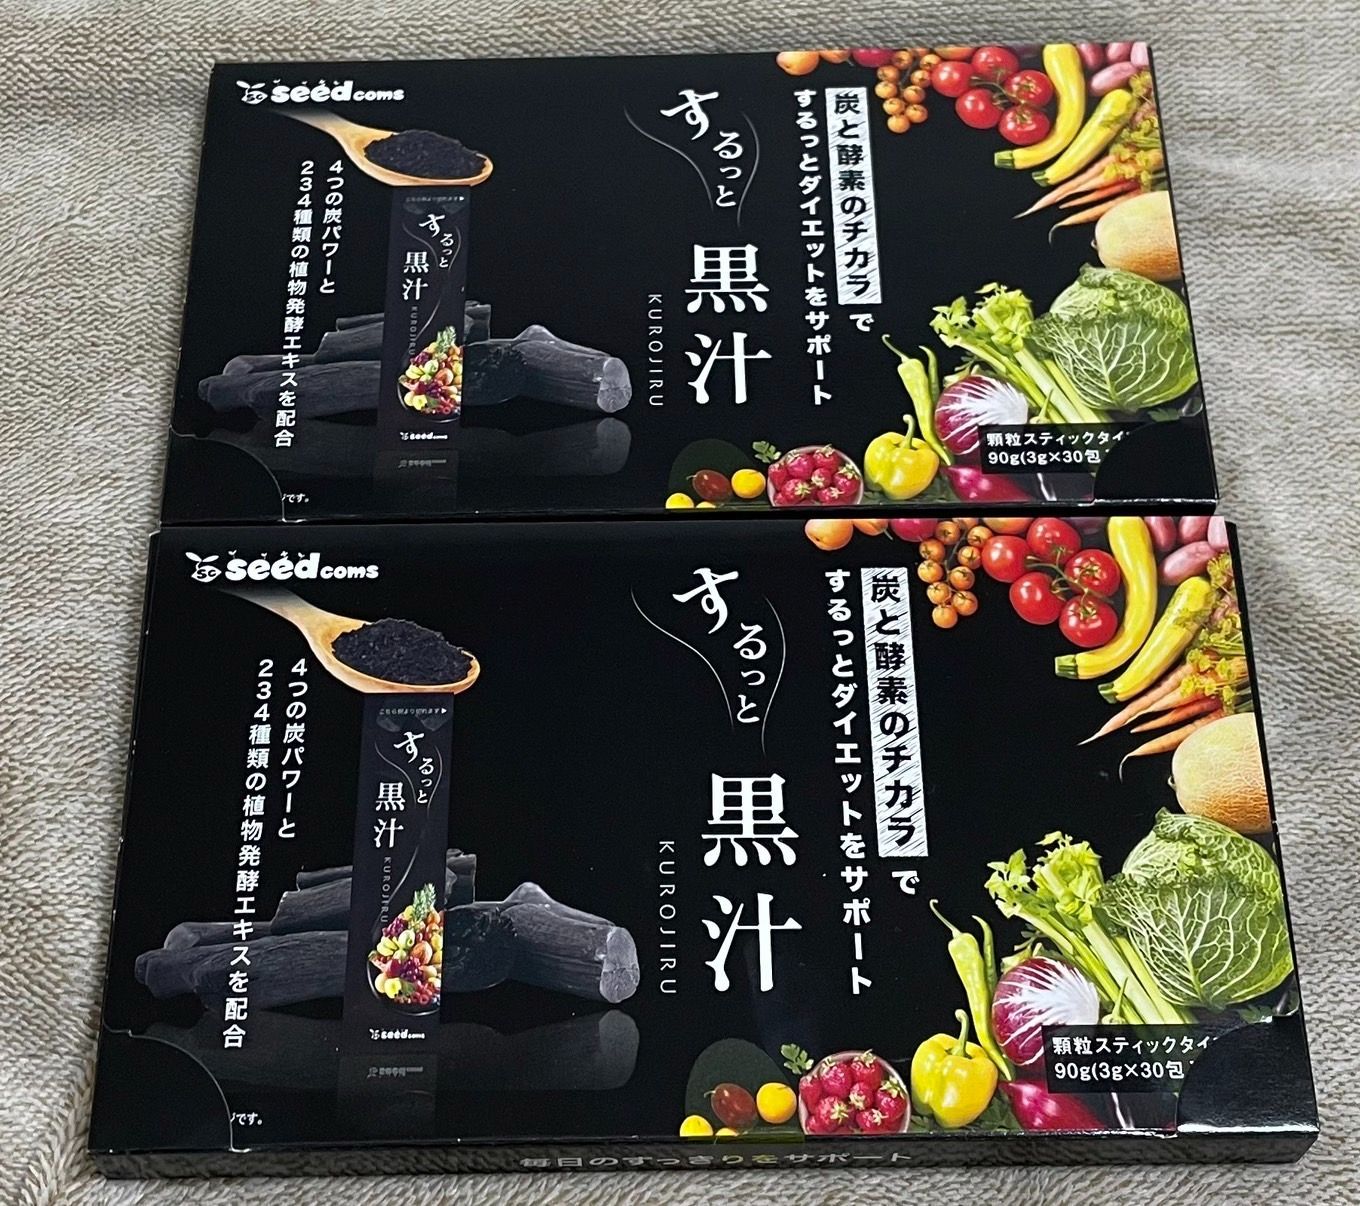 黒汁　KUROJIRU 30包　新品未開封